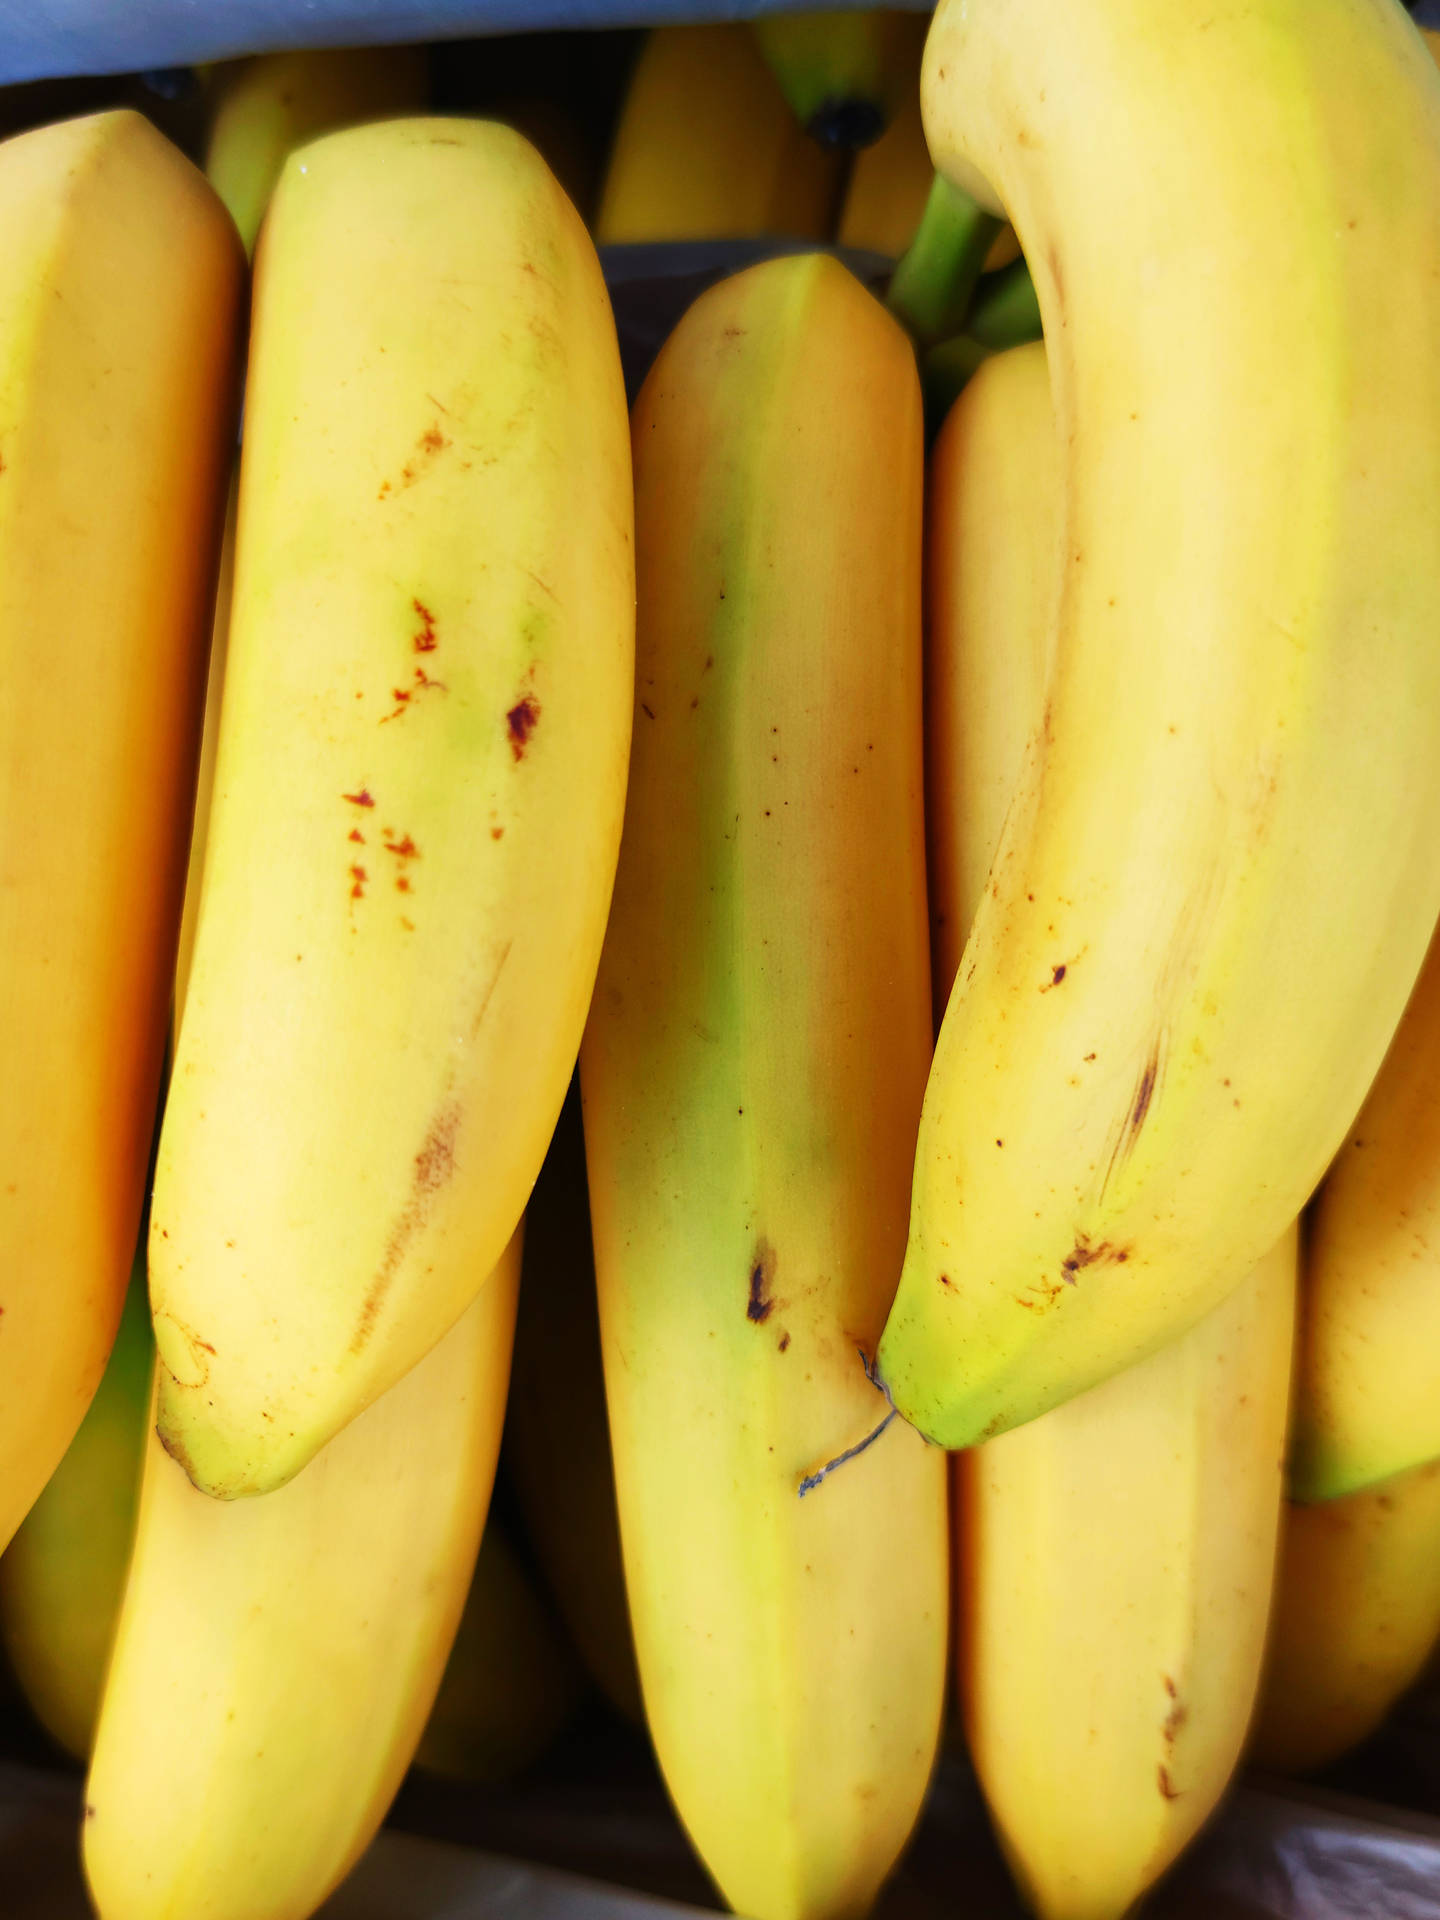 Bananas Close-Up Shot Wallpaper